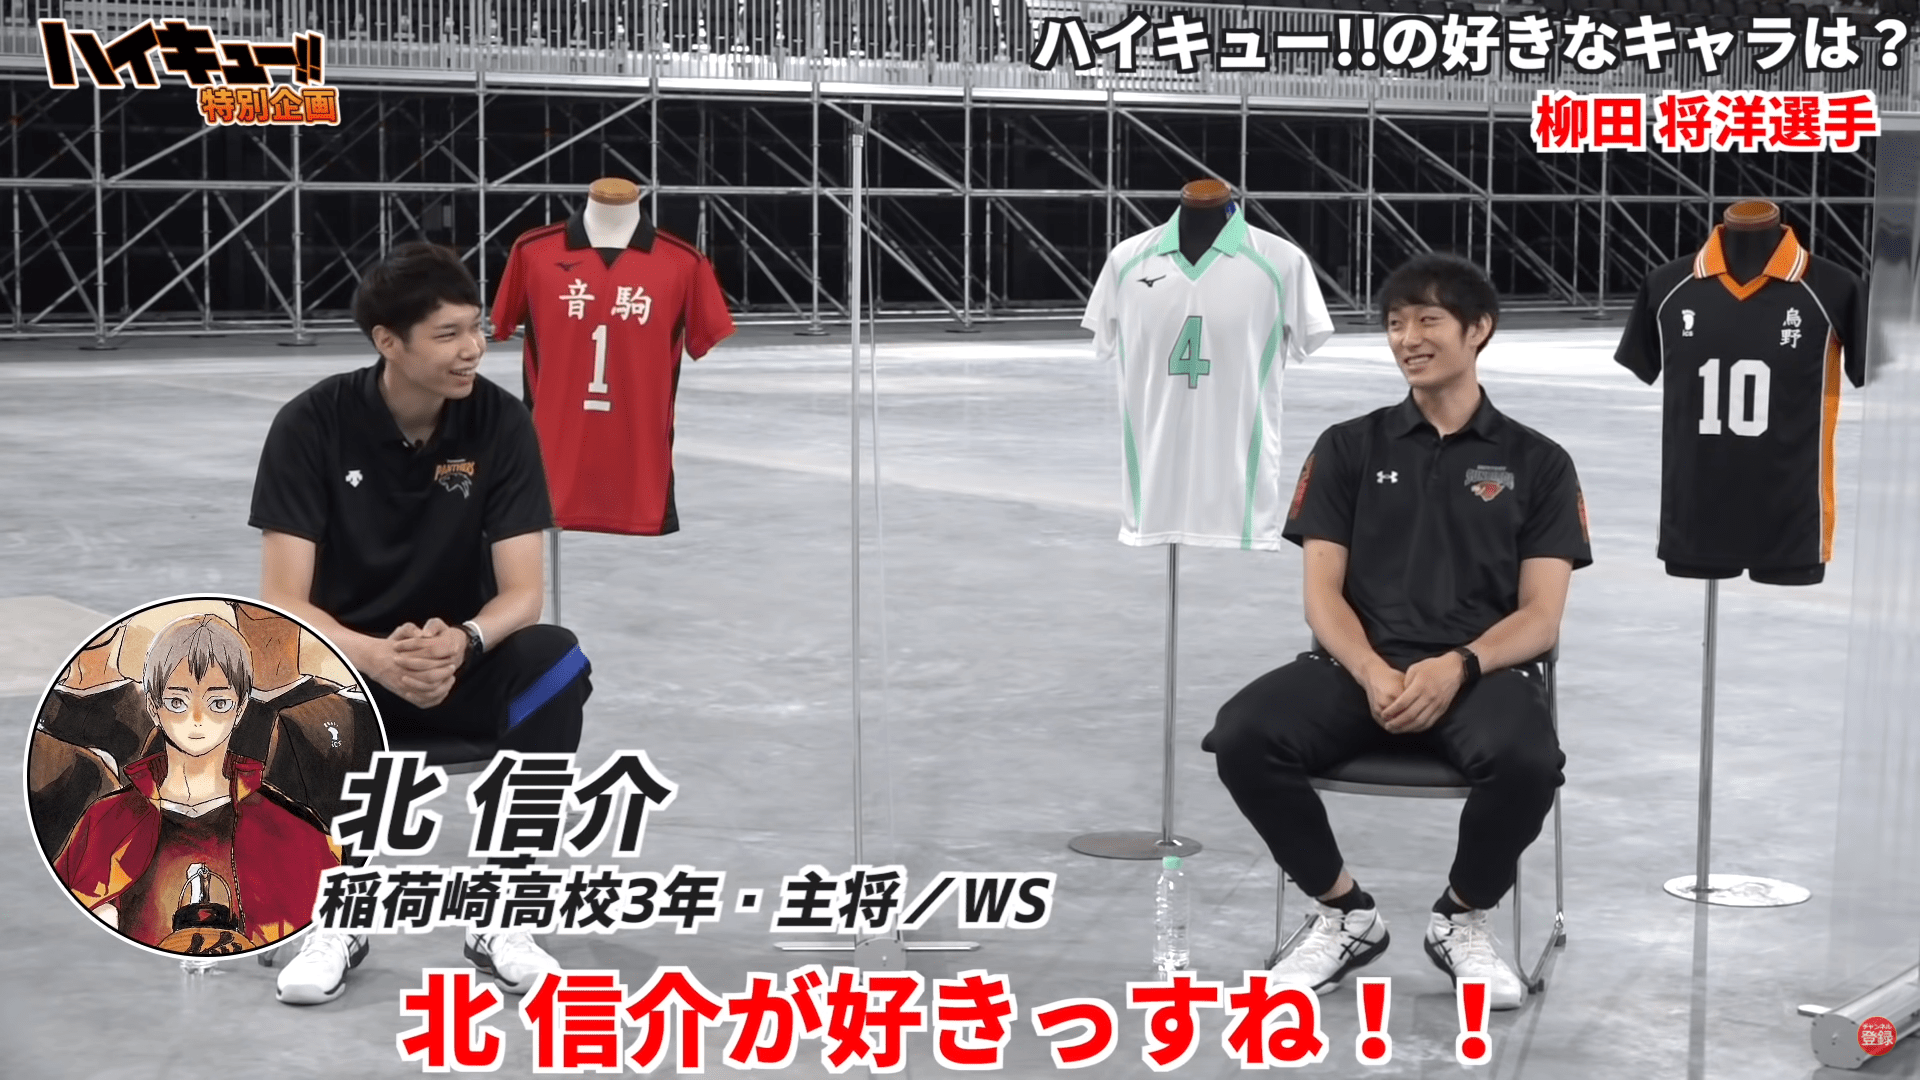 japanese volleyball team -masahiro yanagida's bias